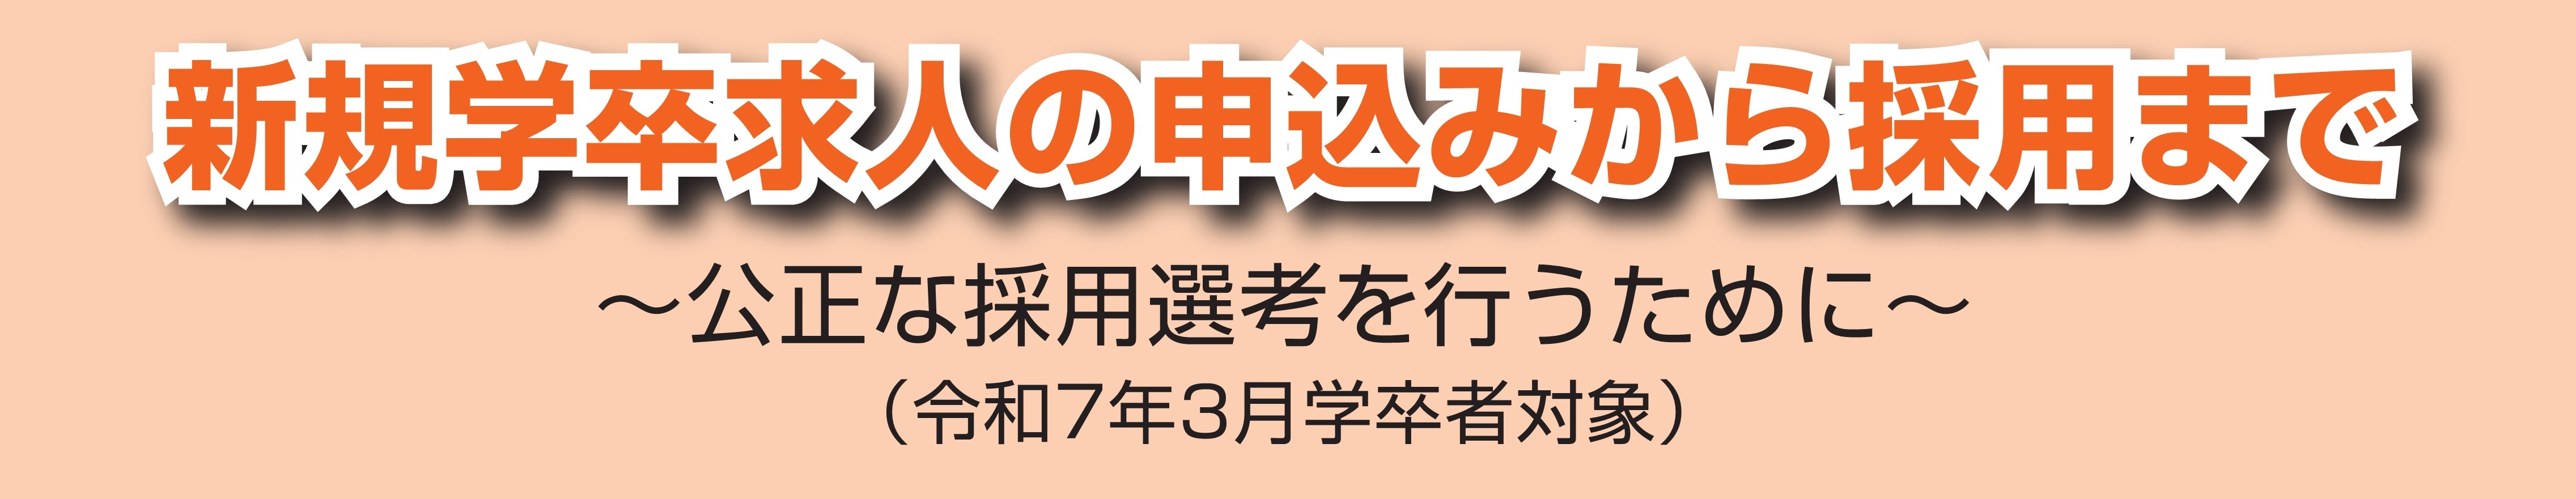 神奈川労働局新規学校卒業予定者求人案内ページ